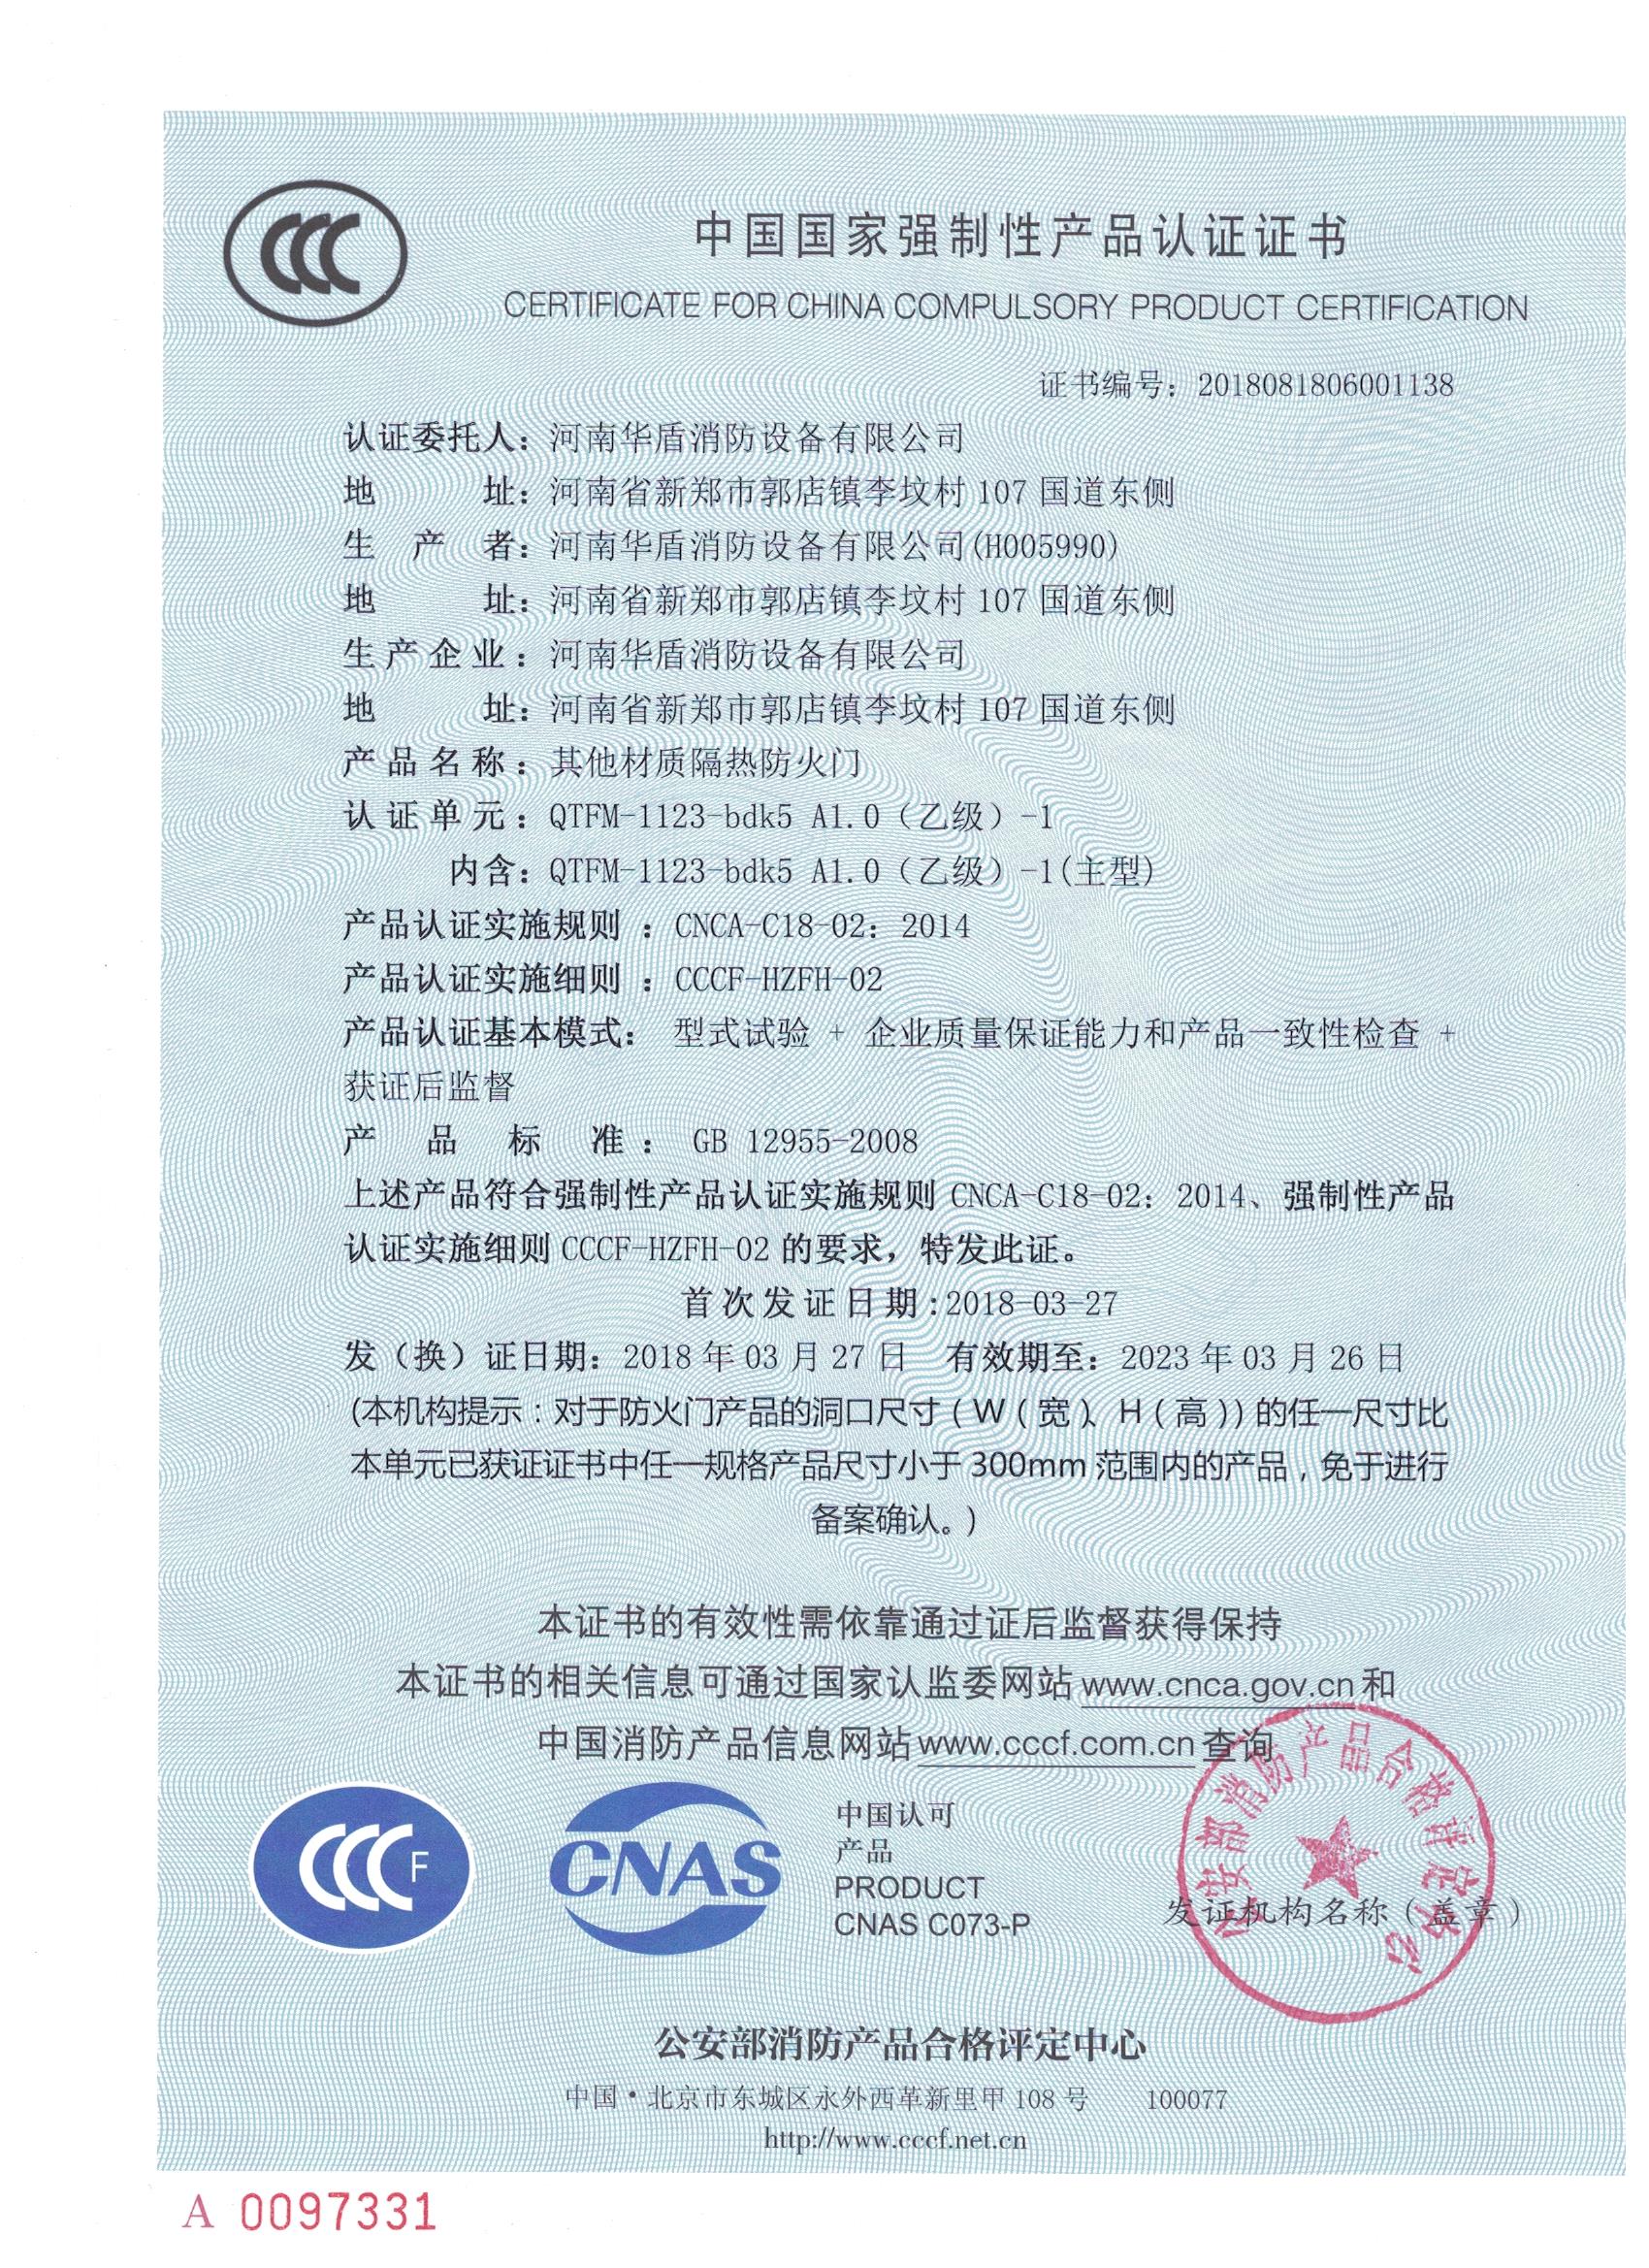 郑州玻璃防火门-3C证书/检验报告